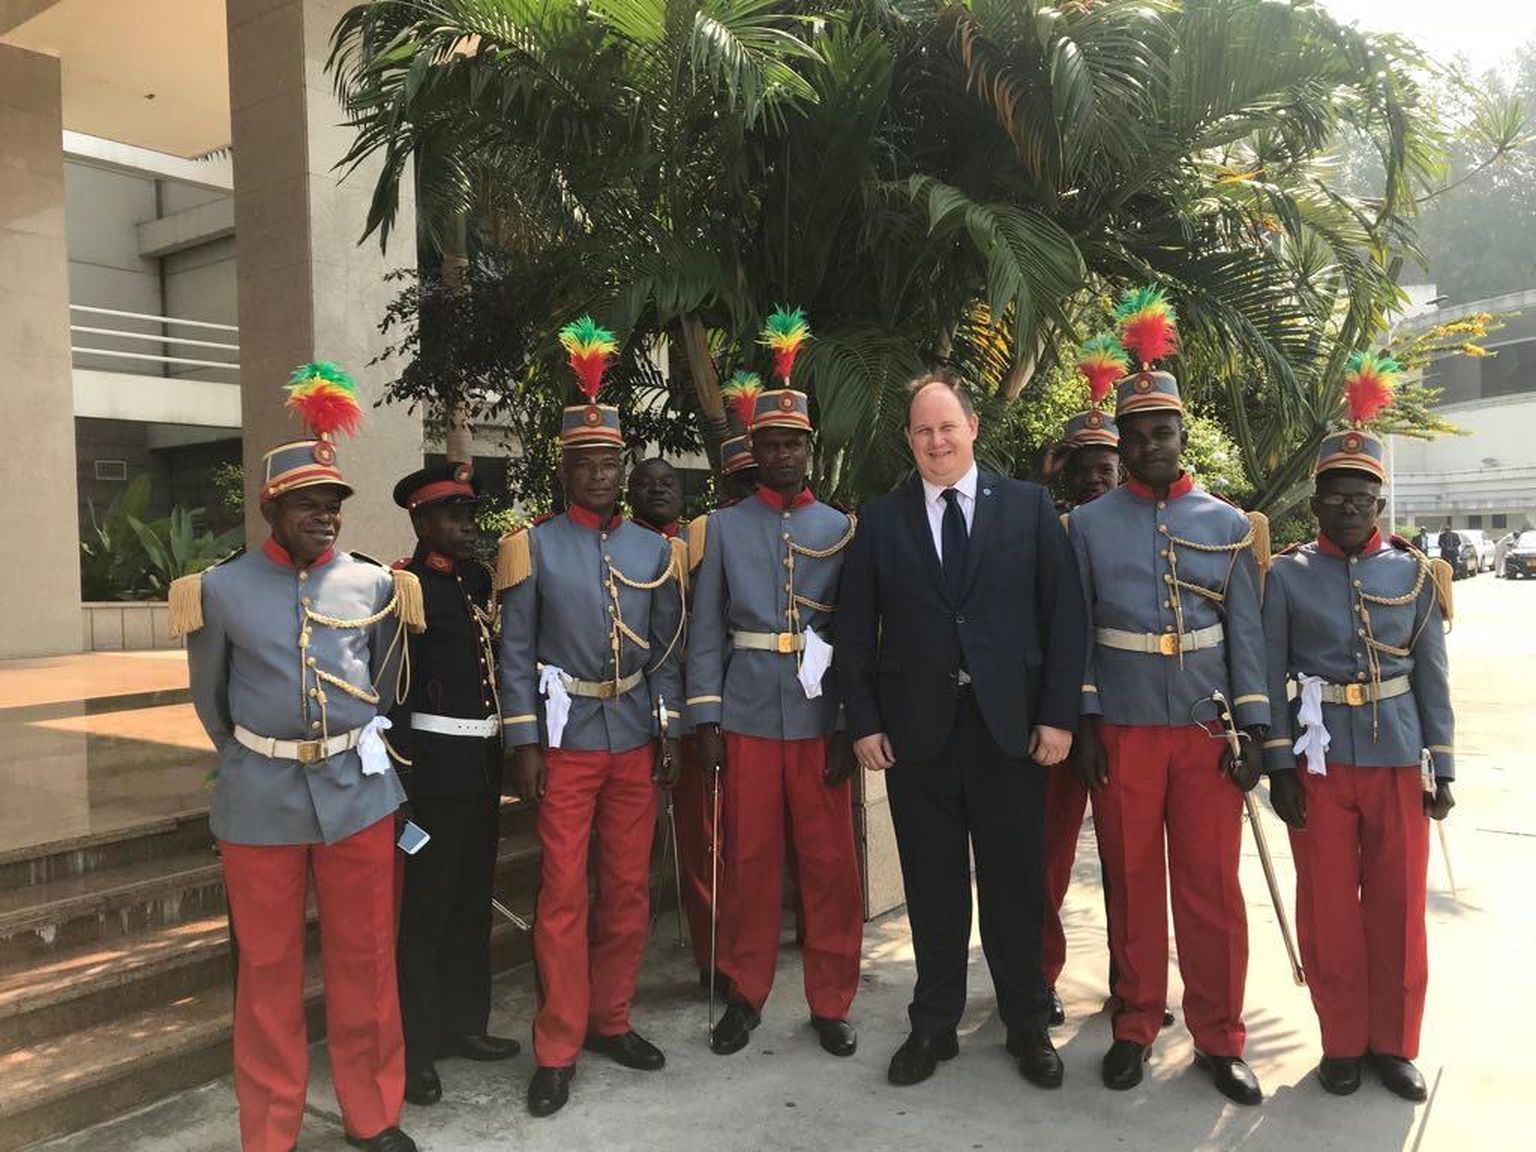 Kongo Vabariigi auvahtkond on kogunenud Daniel Schaeri (pildi keskel) ümber, et tervitada kauget külalist Eestist.